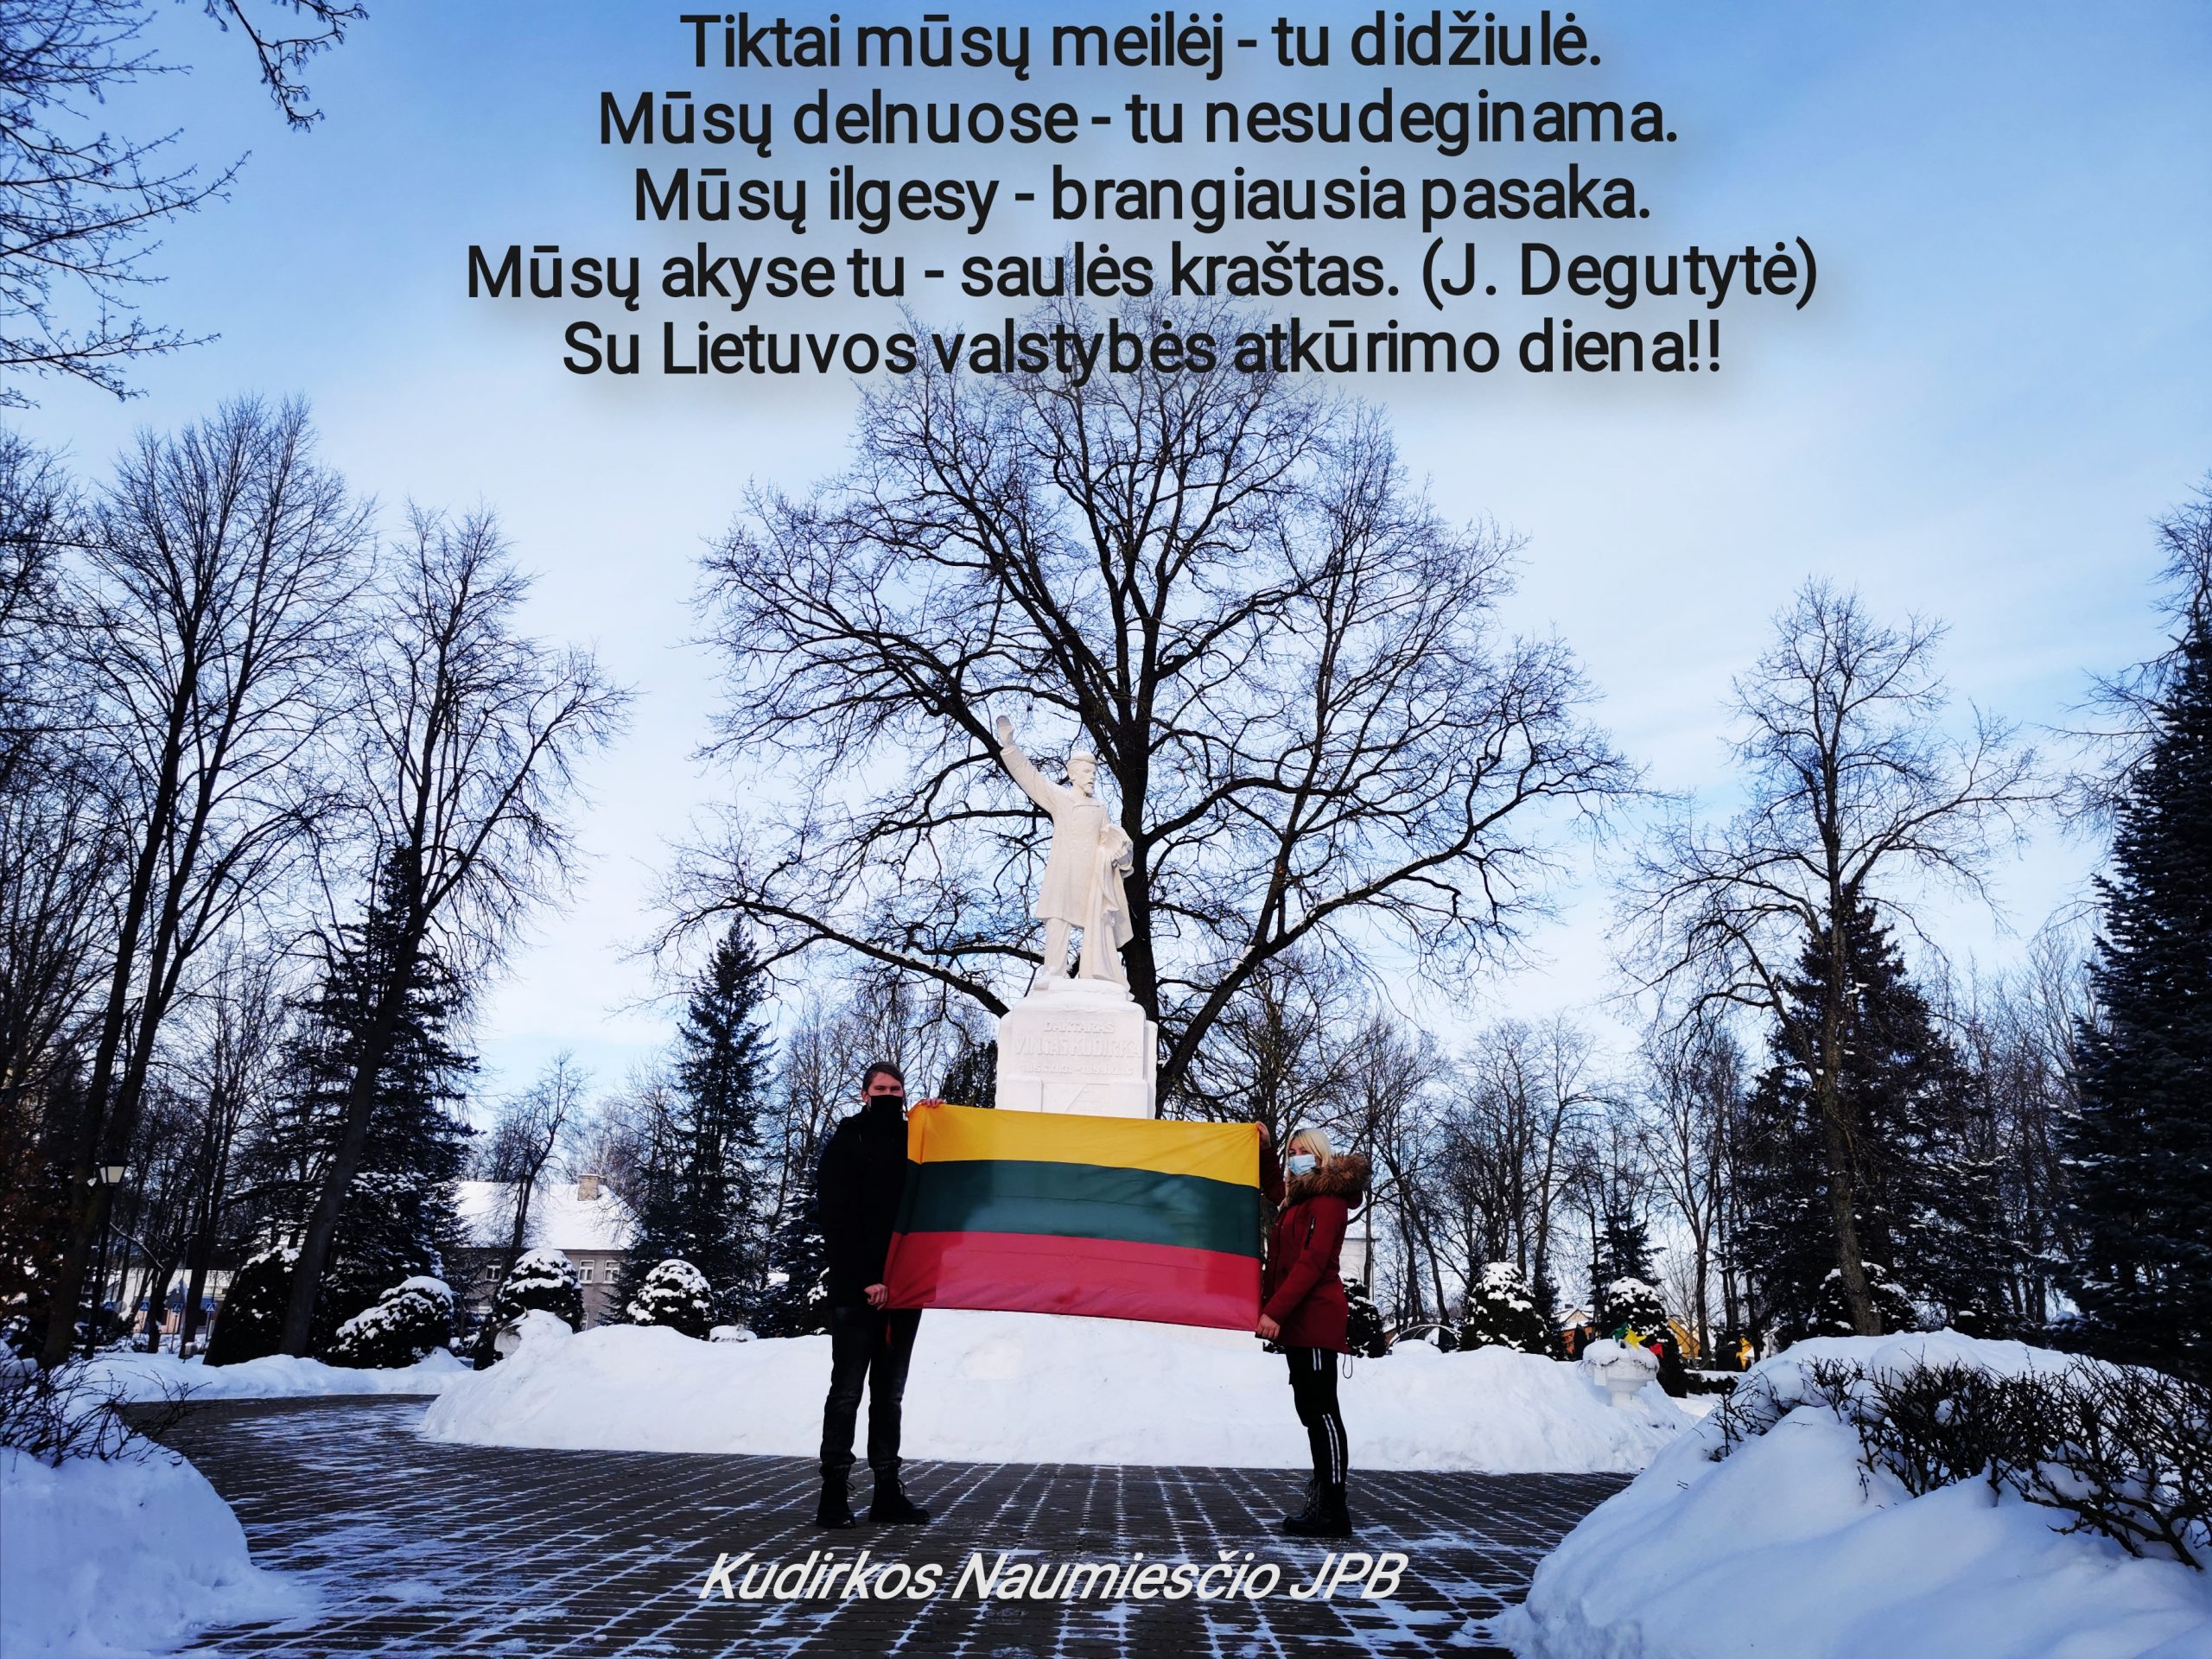 Kudirkos Naumiesčio JPB sveikina su Lietuvos valstybės atkūrimo diena!